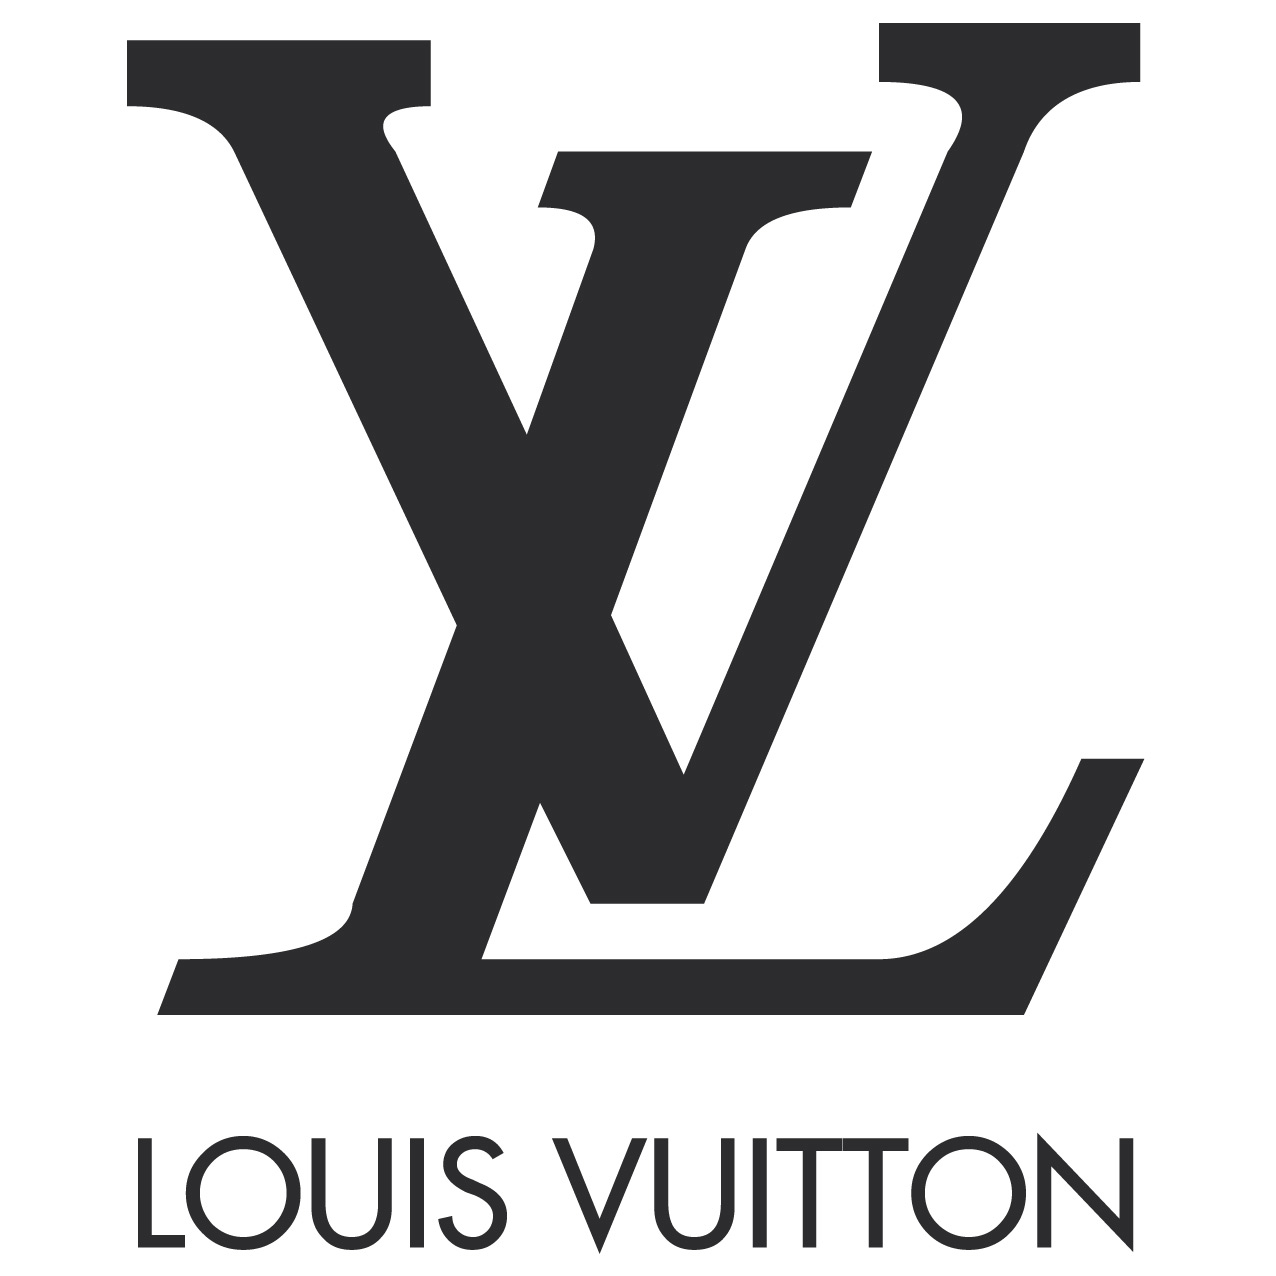 Vector Of the world: Louis Vuitton logo